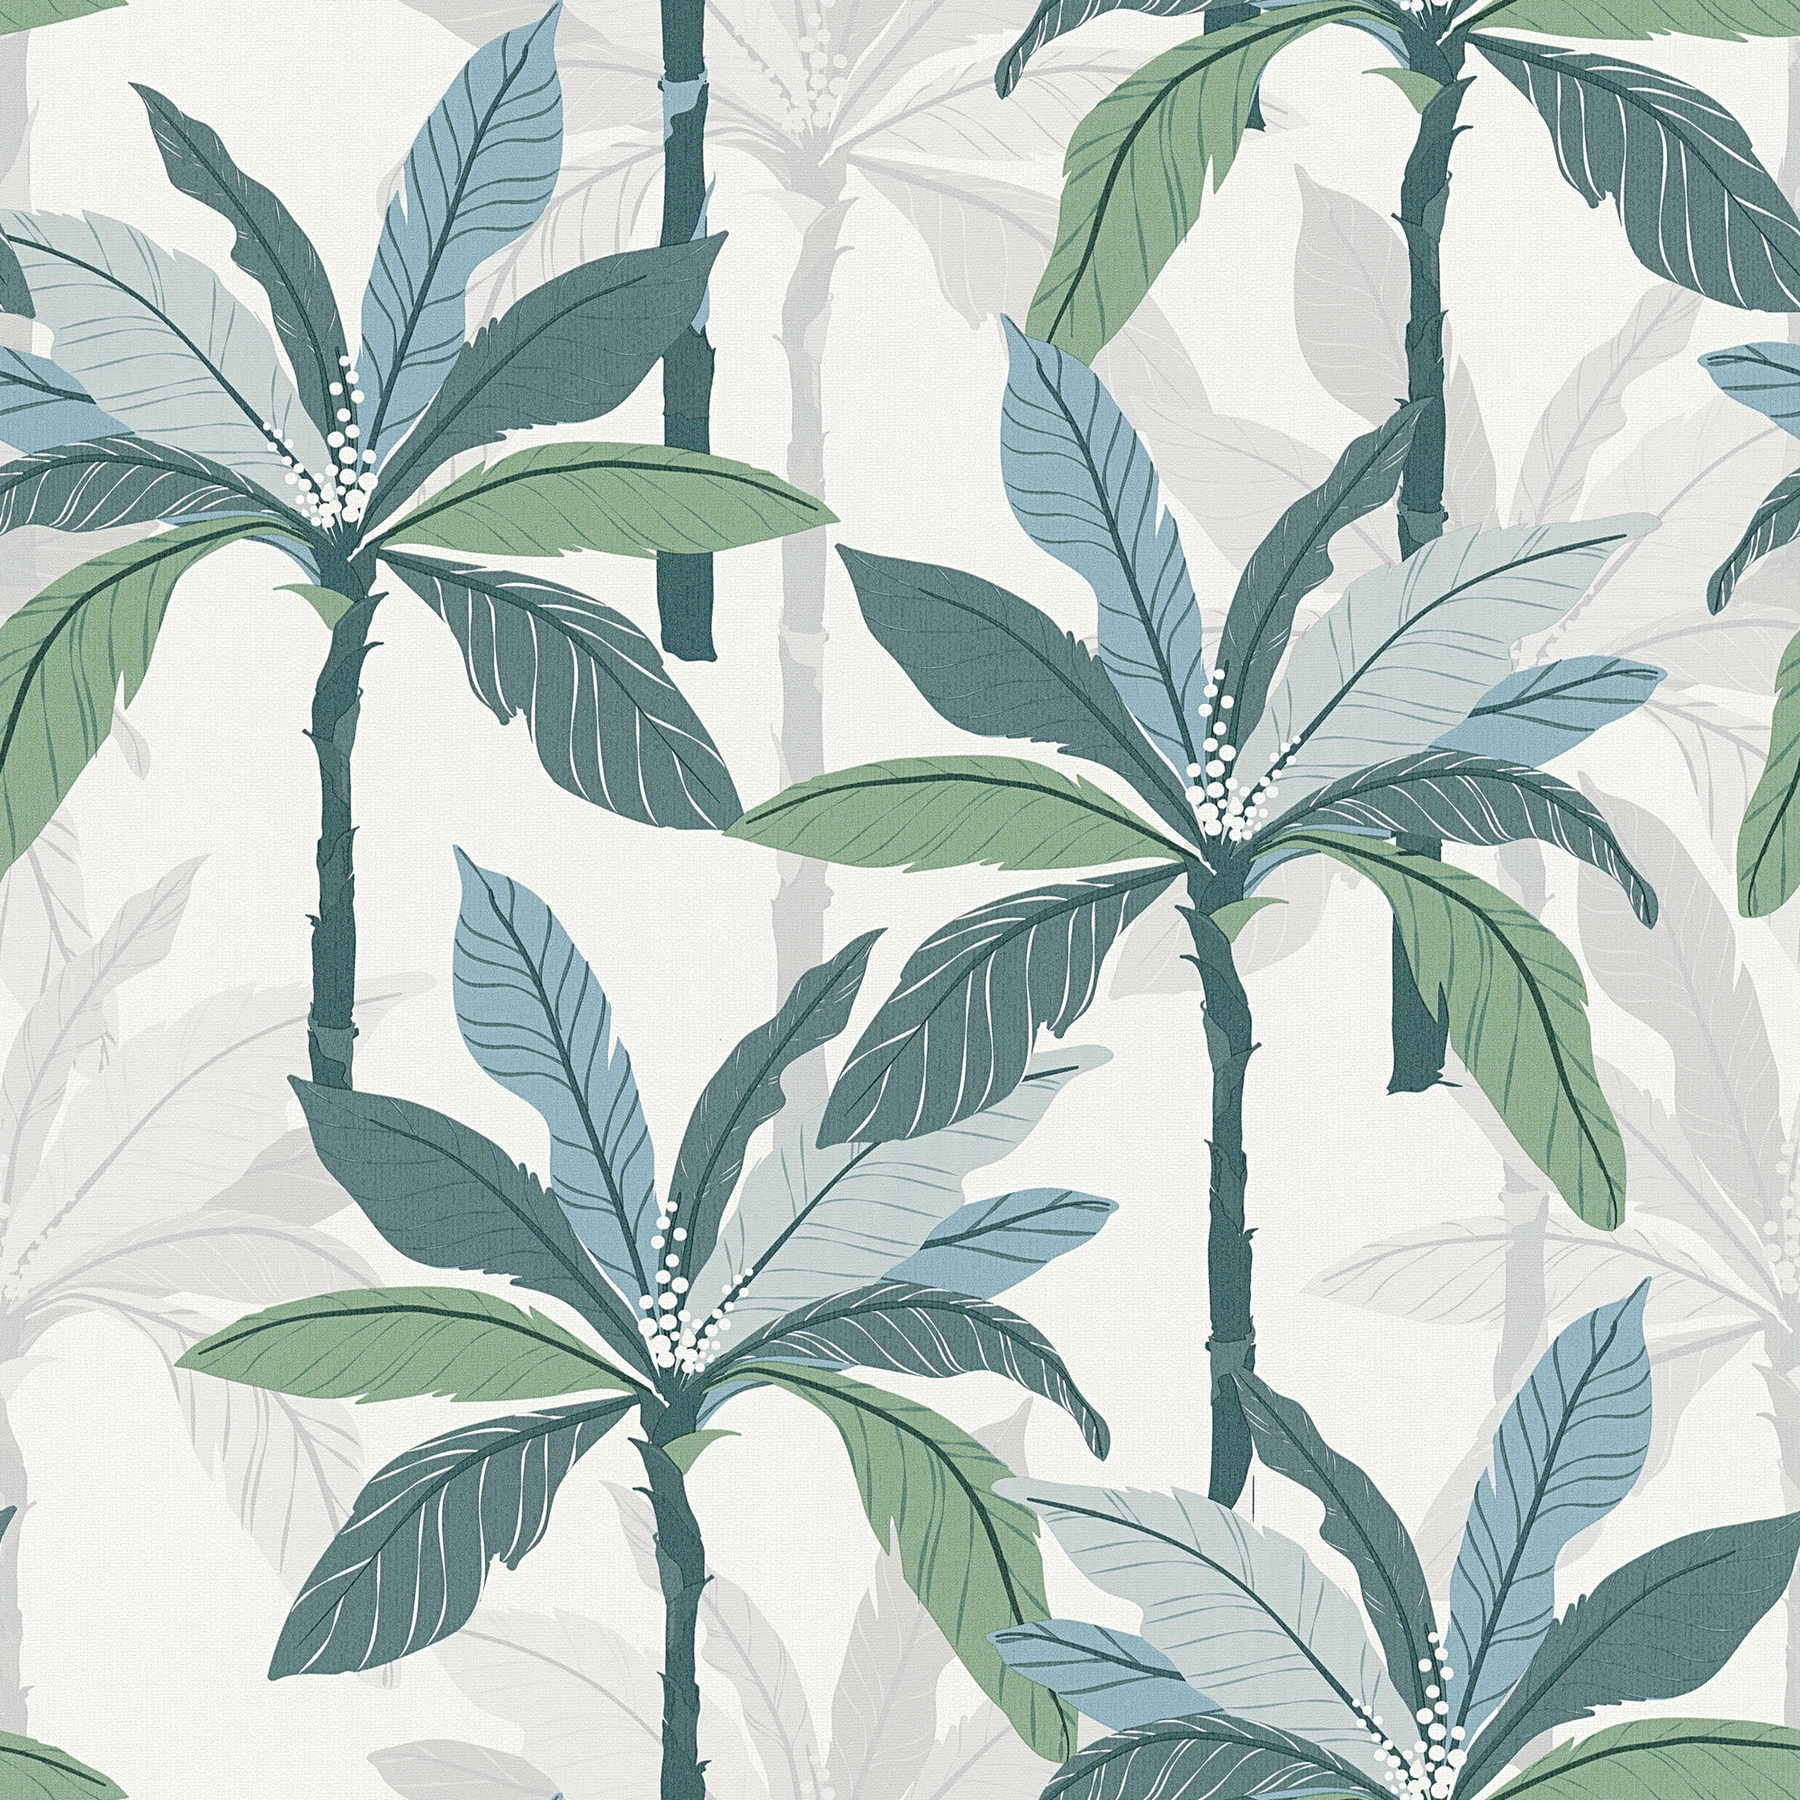 Tropisch behang met palmboom design - blauw, groen, wit
